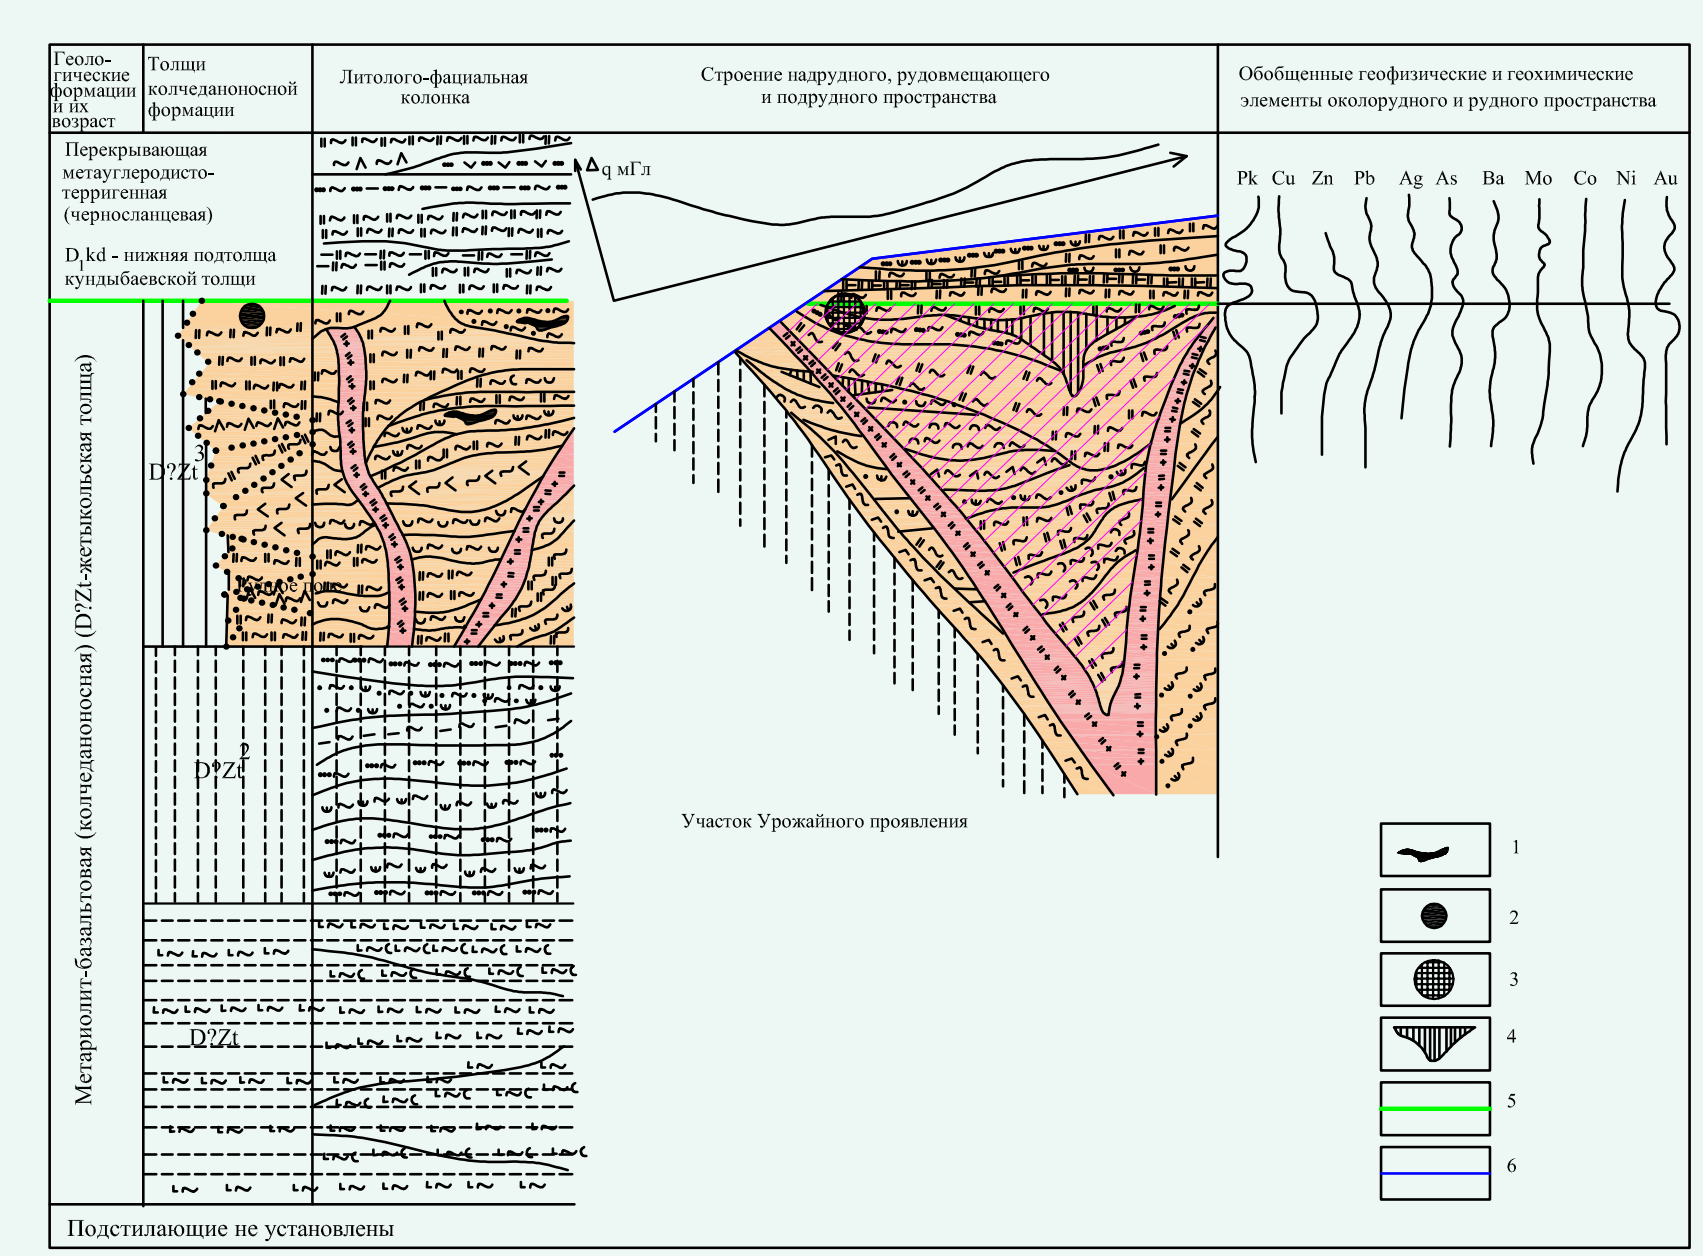 Поисковая модель Озерного рудного поля и Жетыкольского проявления: 1 – предполагаемые залежи колчеданных руд; 2 – проявления колчеданных руд; 3 – проявления Урожайное; 4 – прогнозируемая залежь сплошных колчеданных руд; 5 – верхний рудоносный уровень; 6 – эрозионная поверхность домезозойских образований